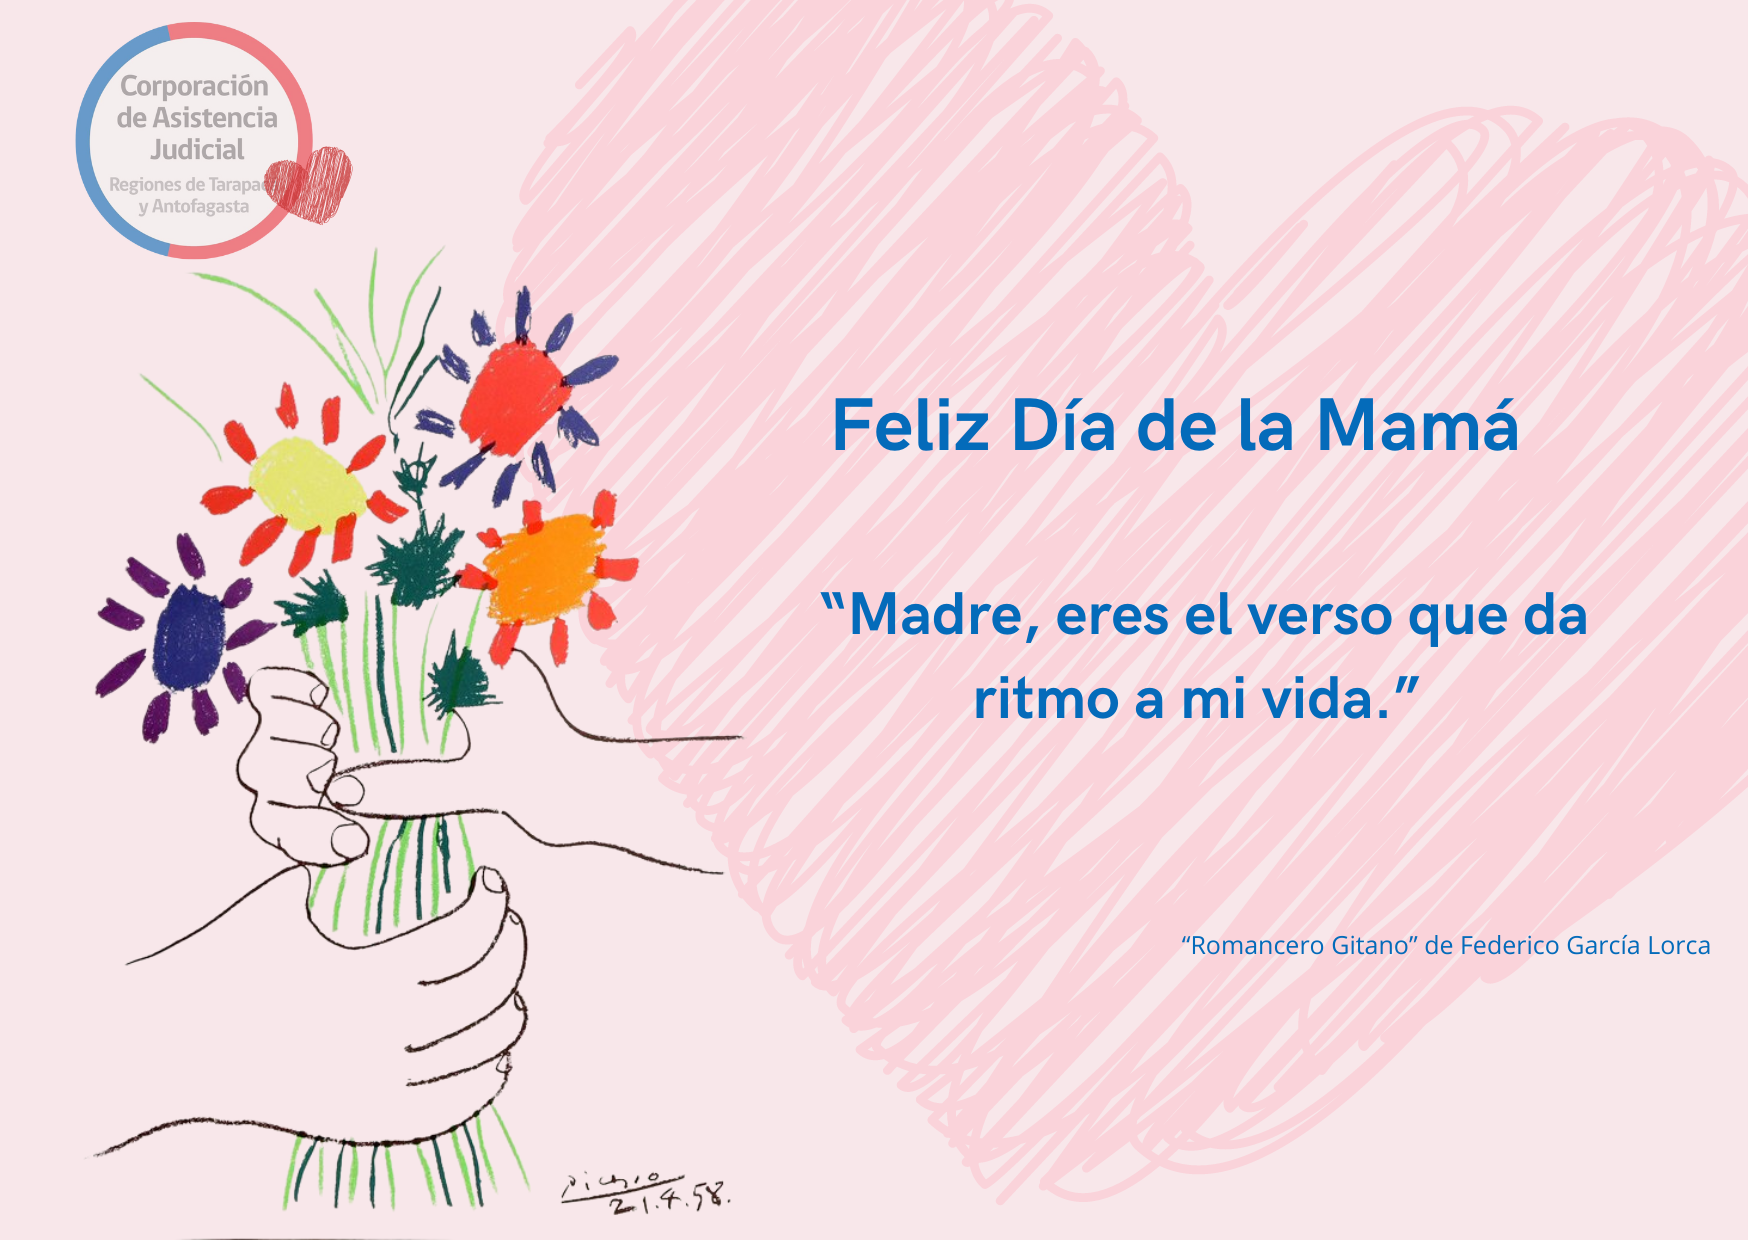 Saludo a todas las mamis en el Día de la Mamá